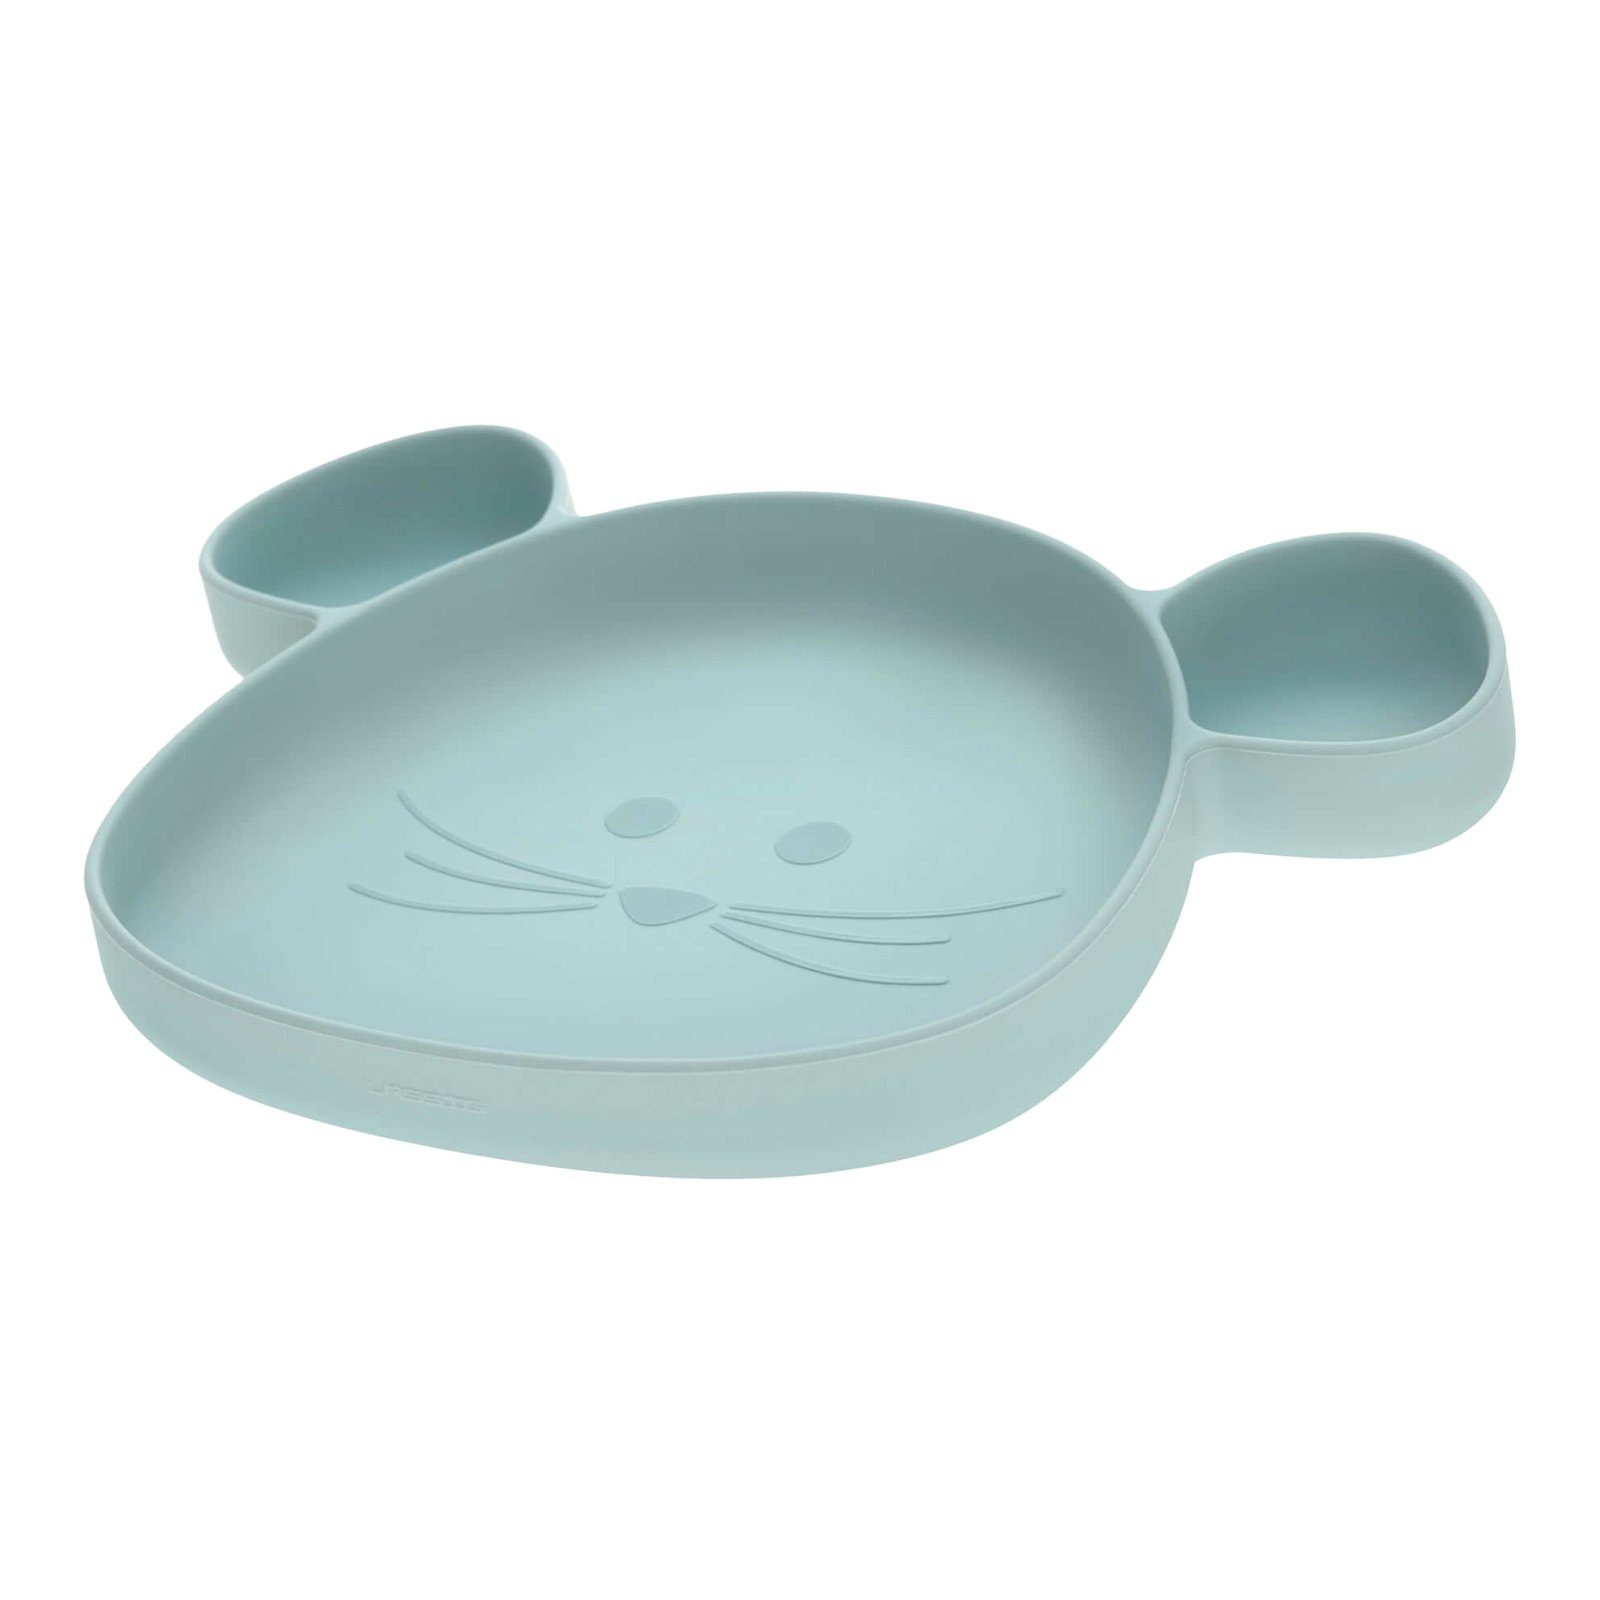 LÄSSIG Kindergeschirr-Set Little Chums Silikon (3-tlg), Lätzchen blau mit Geschirrset Silikon Maus